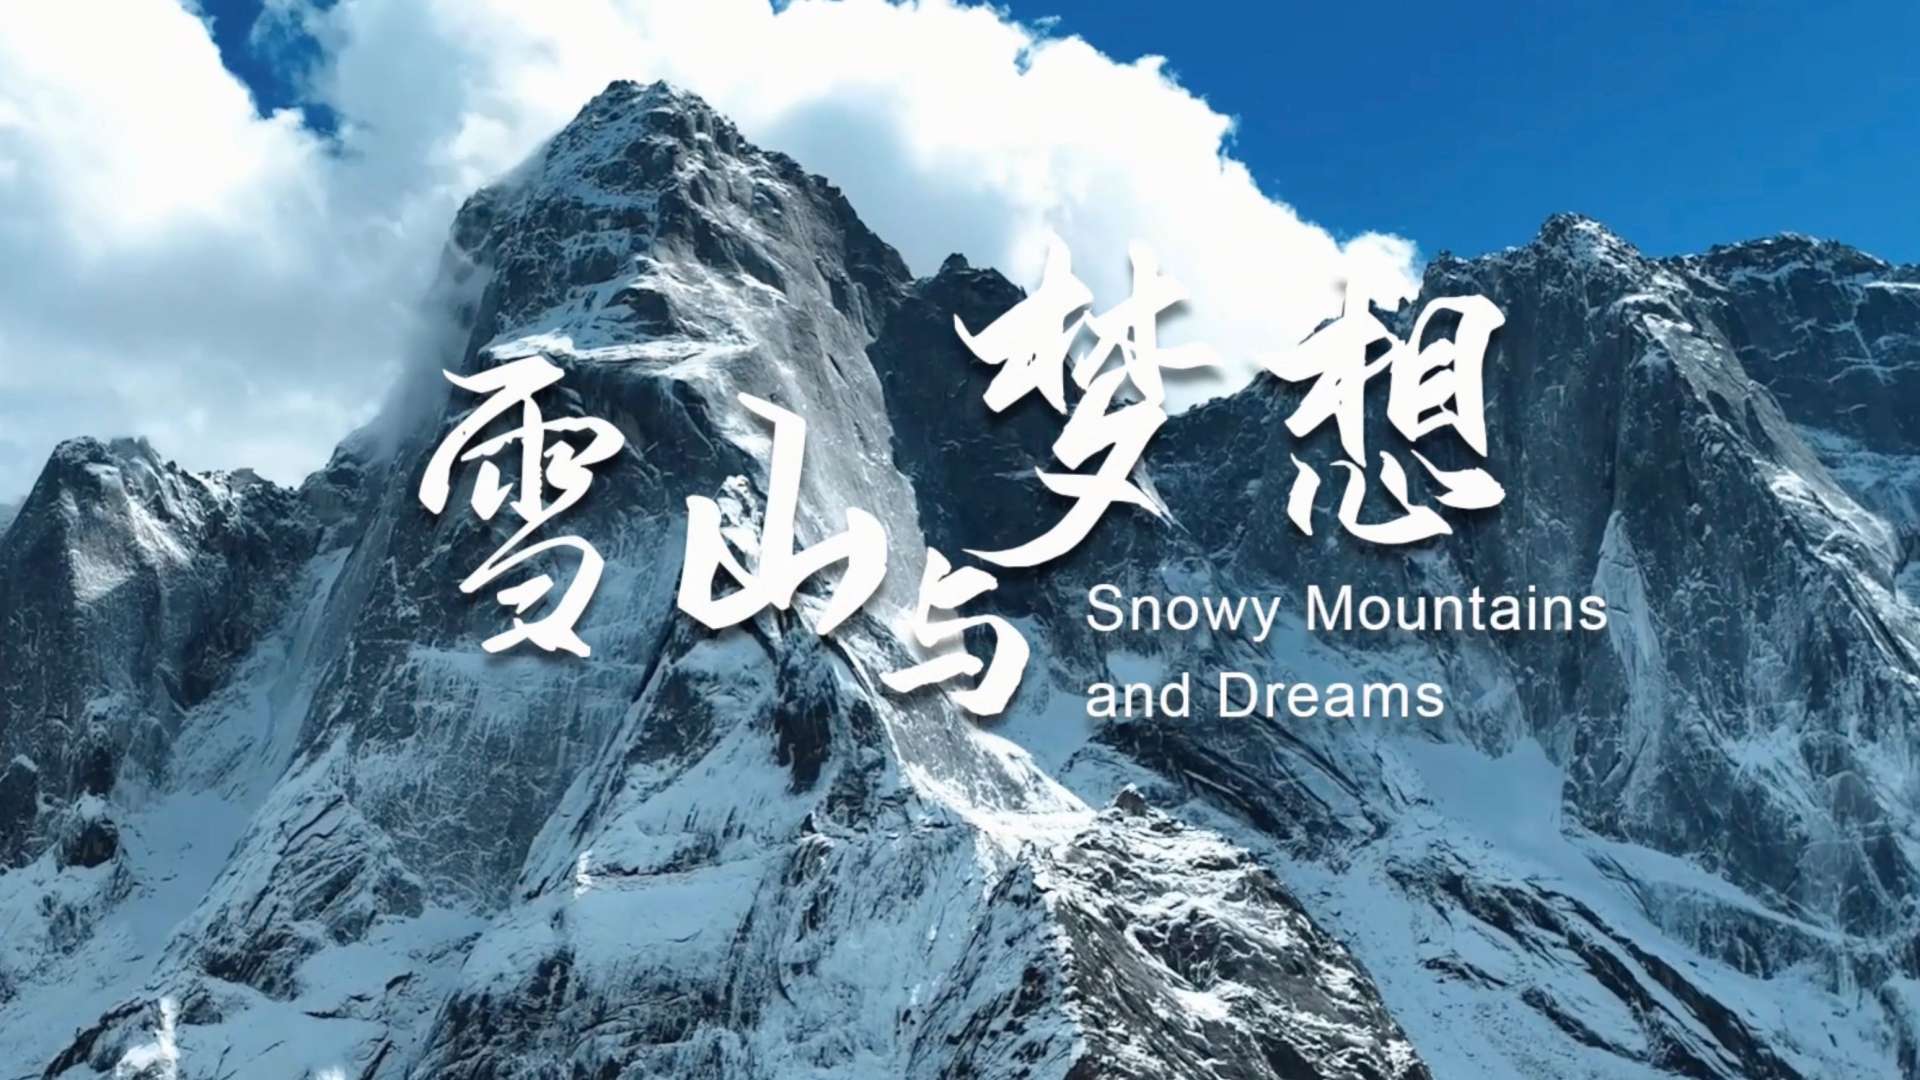 《雪山与梦想》四姑娘山世界地质公园申报考察纪实